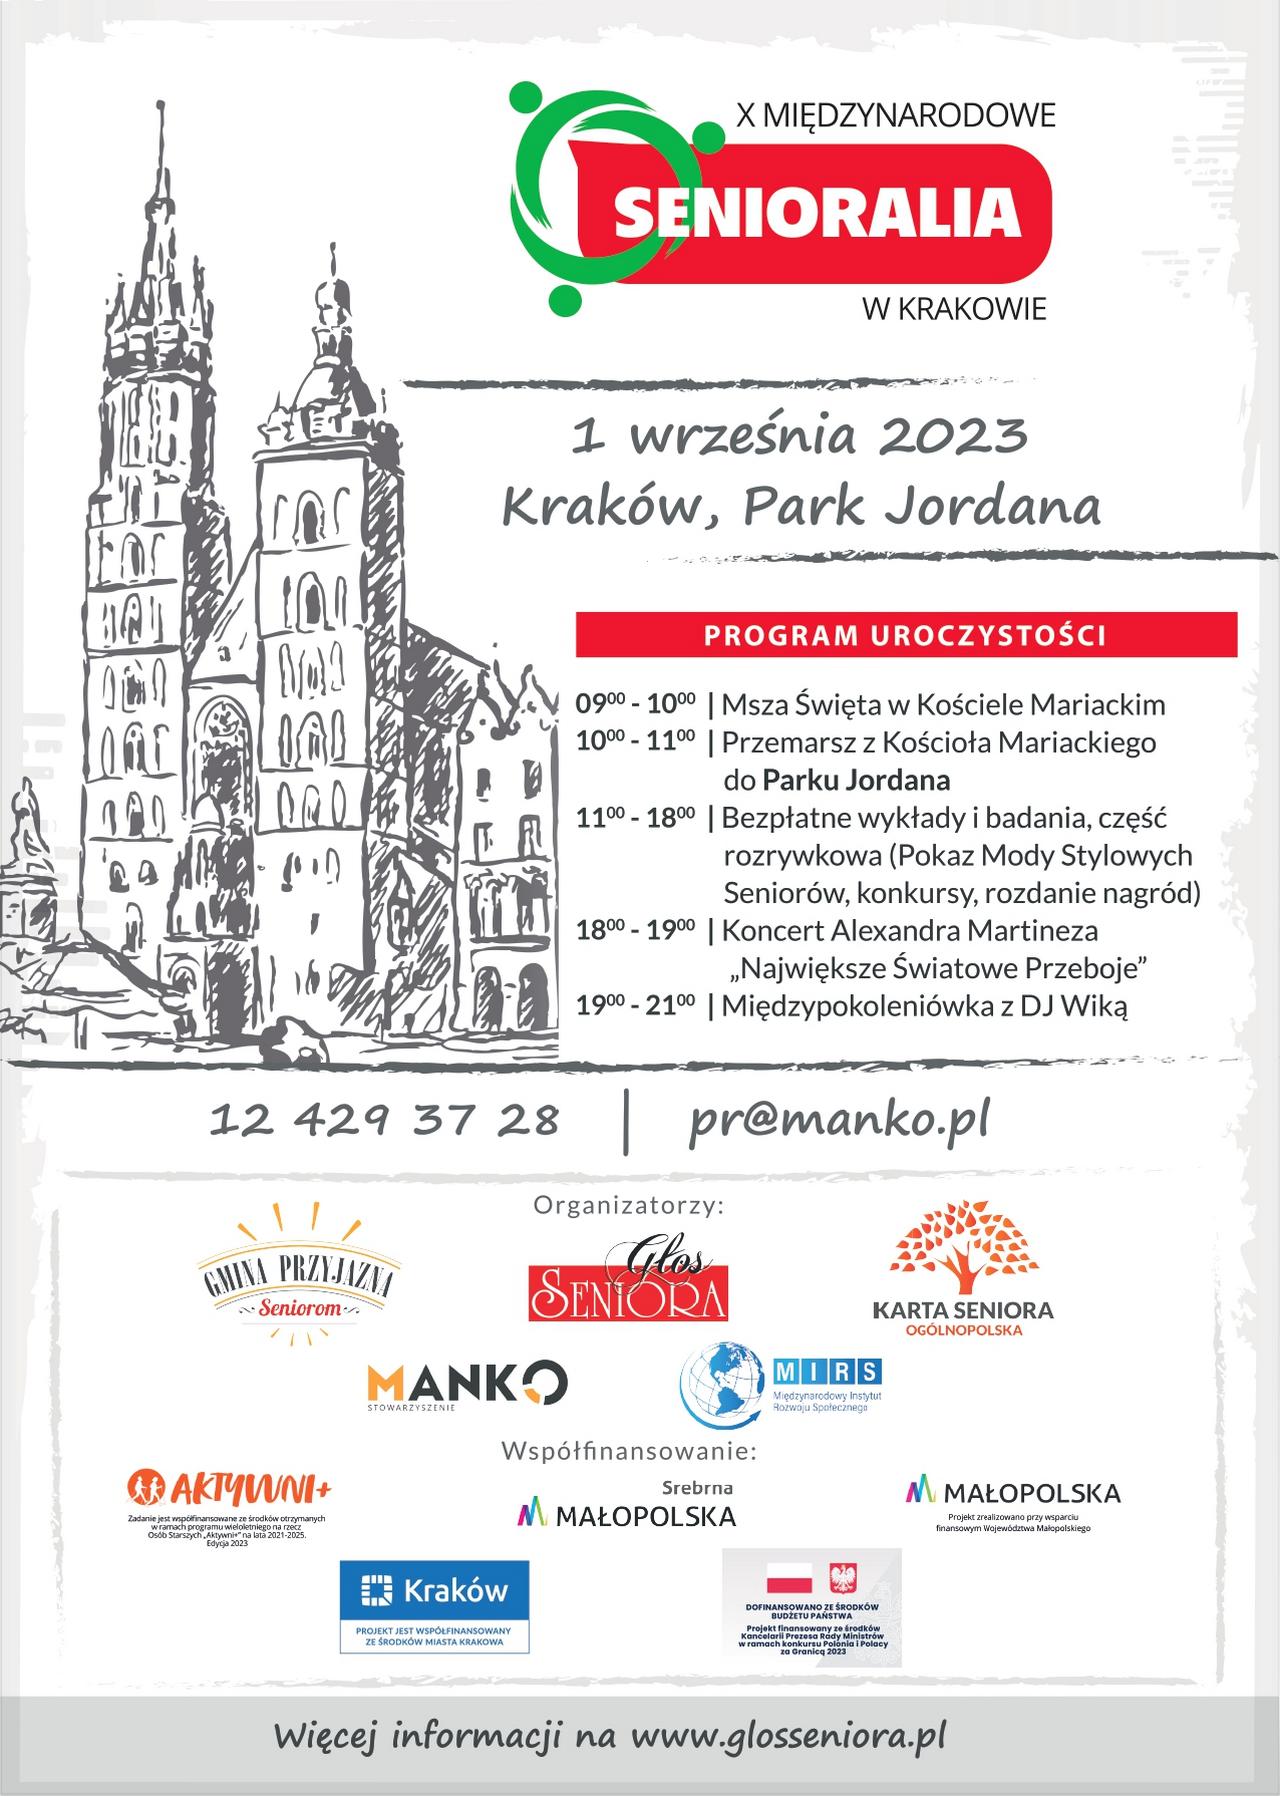 X Międzynarodowe Senioralia w Krakowie - 1 września 2023